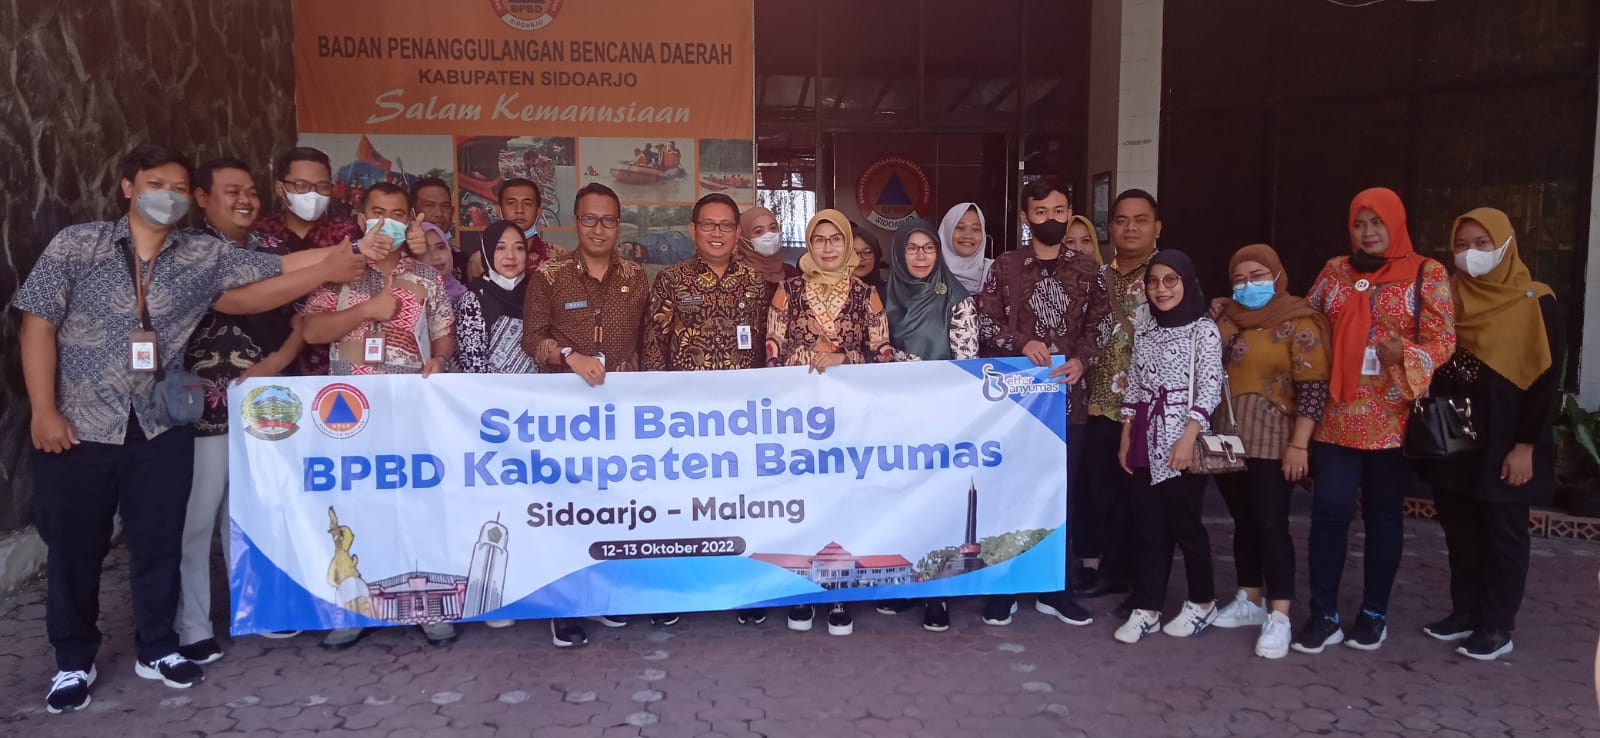 Kunjungan studi banding dari BPBD Kabupaten Banyumas, Jawa Tengah ke BPBD Kabupaten Sidoarjo